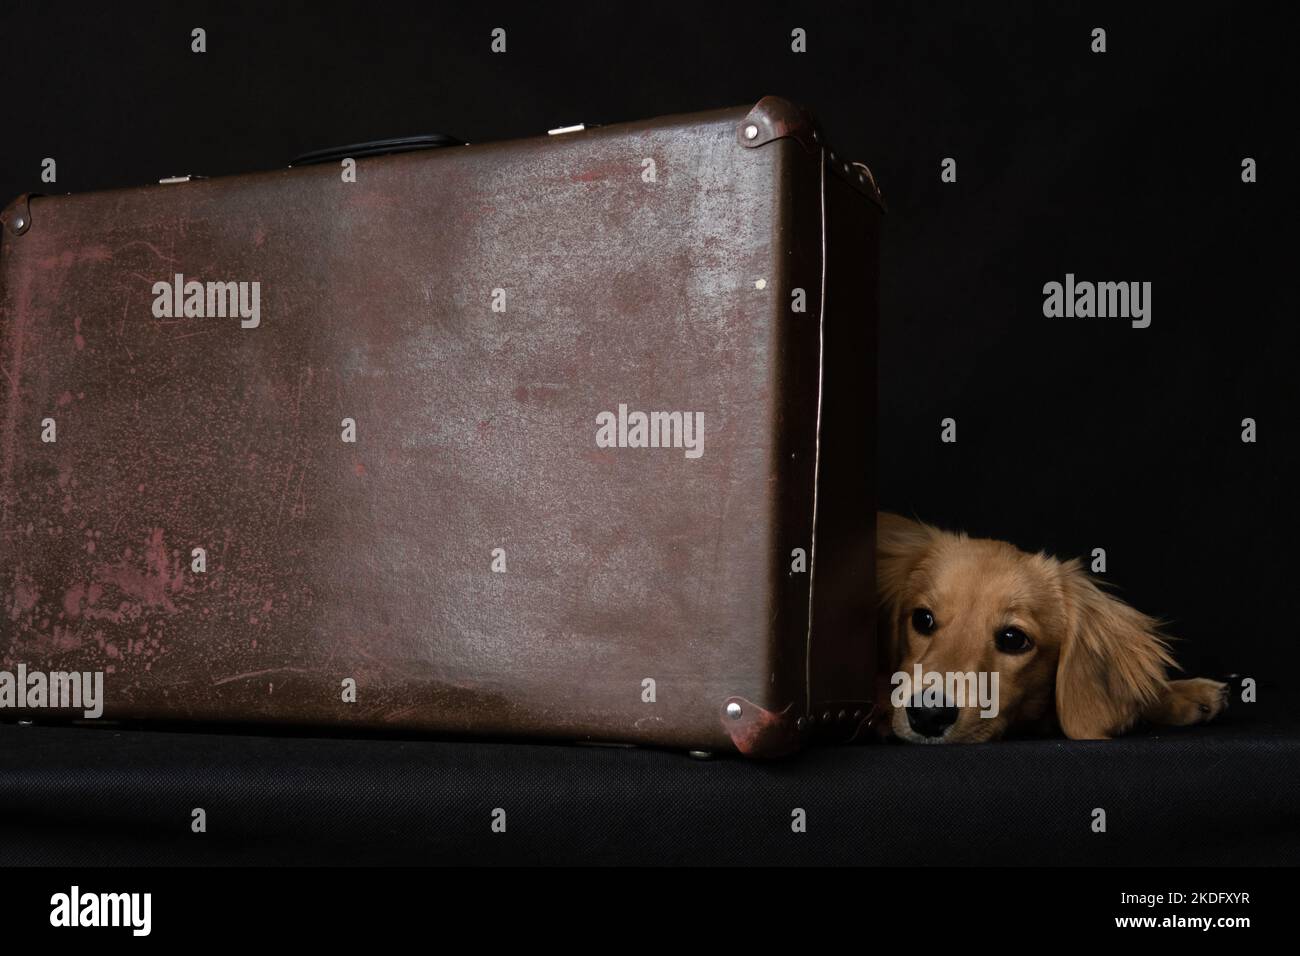 Un perro de pelo largo de pelo rojo como el dachshund al lado de una maleta se encuentra tristemente sobre un fondo negro en el interior del estudio. Foto de stock